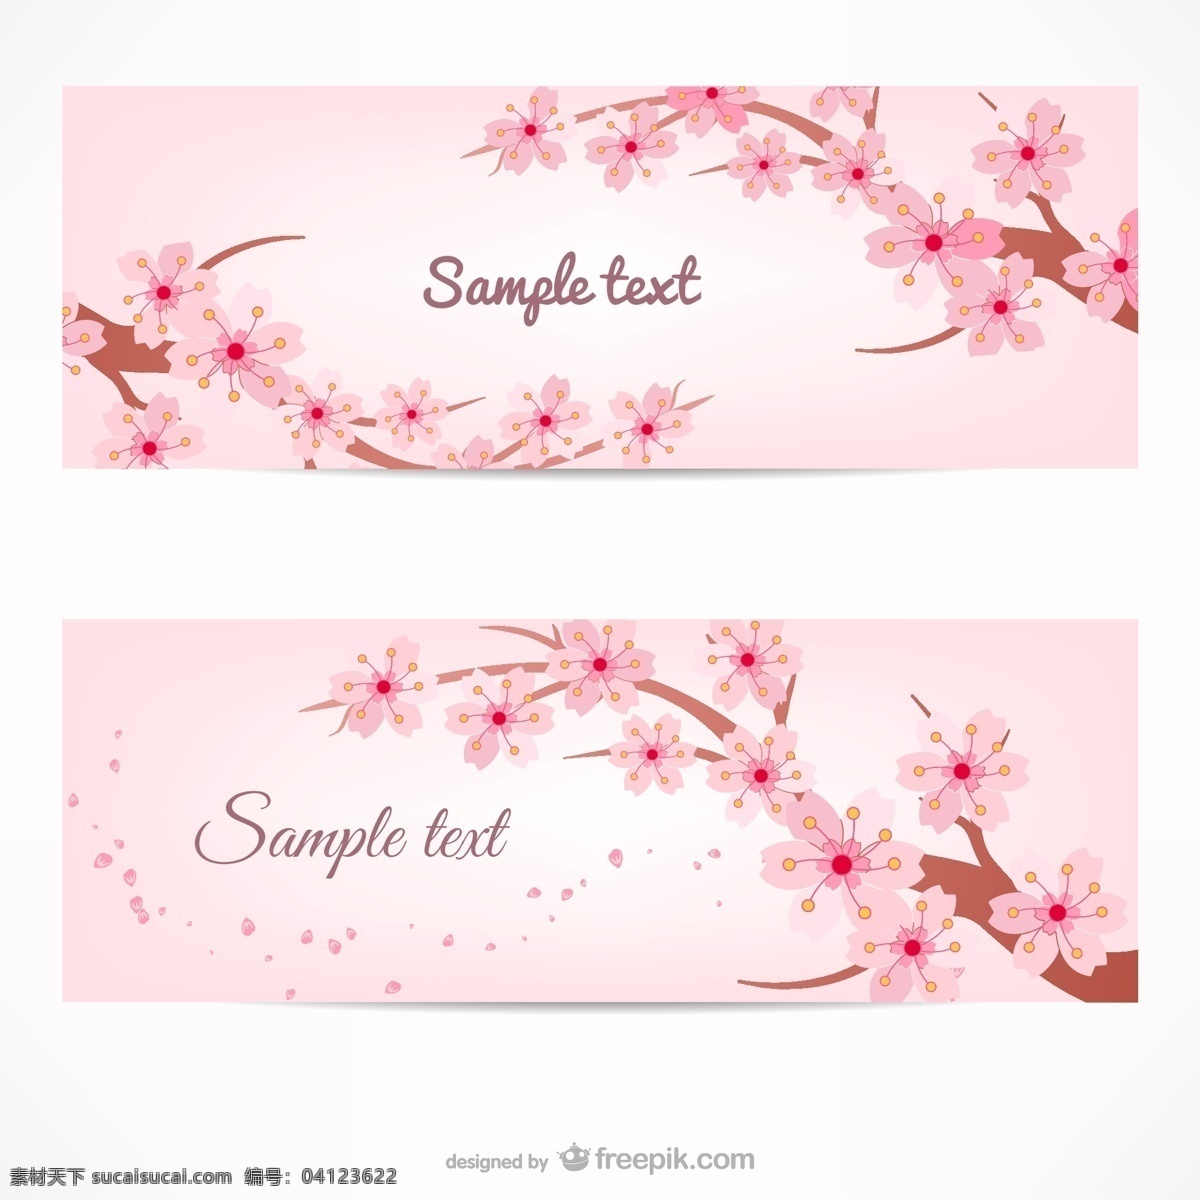 粉色 樱花树 背景 春天 海报 背景素材 web 界面设计 中文模板